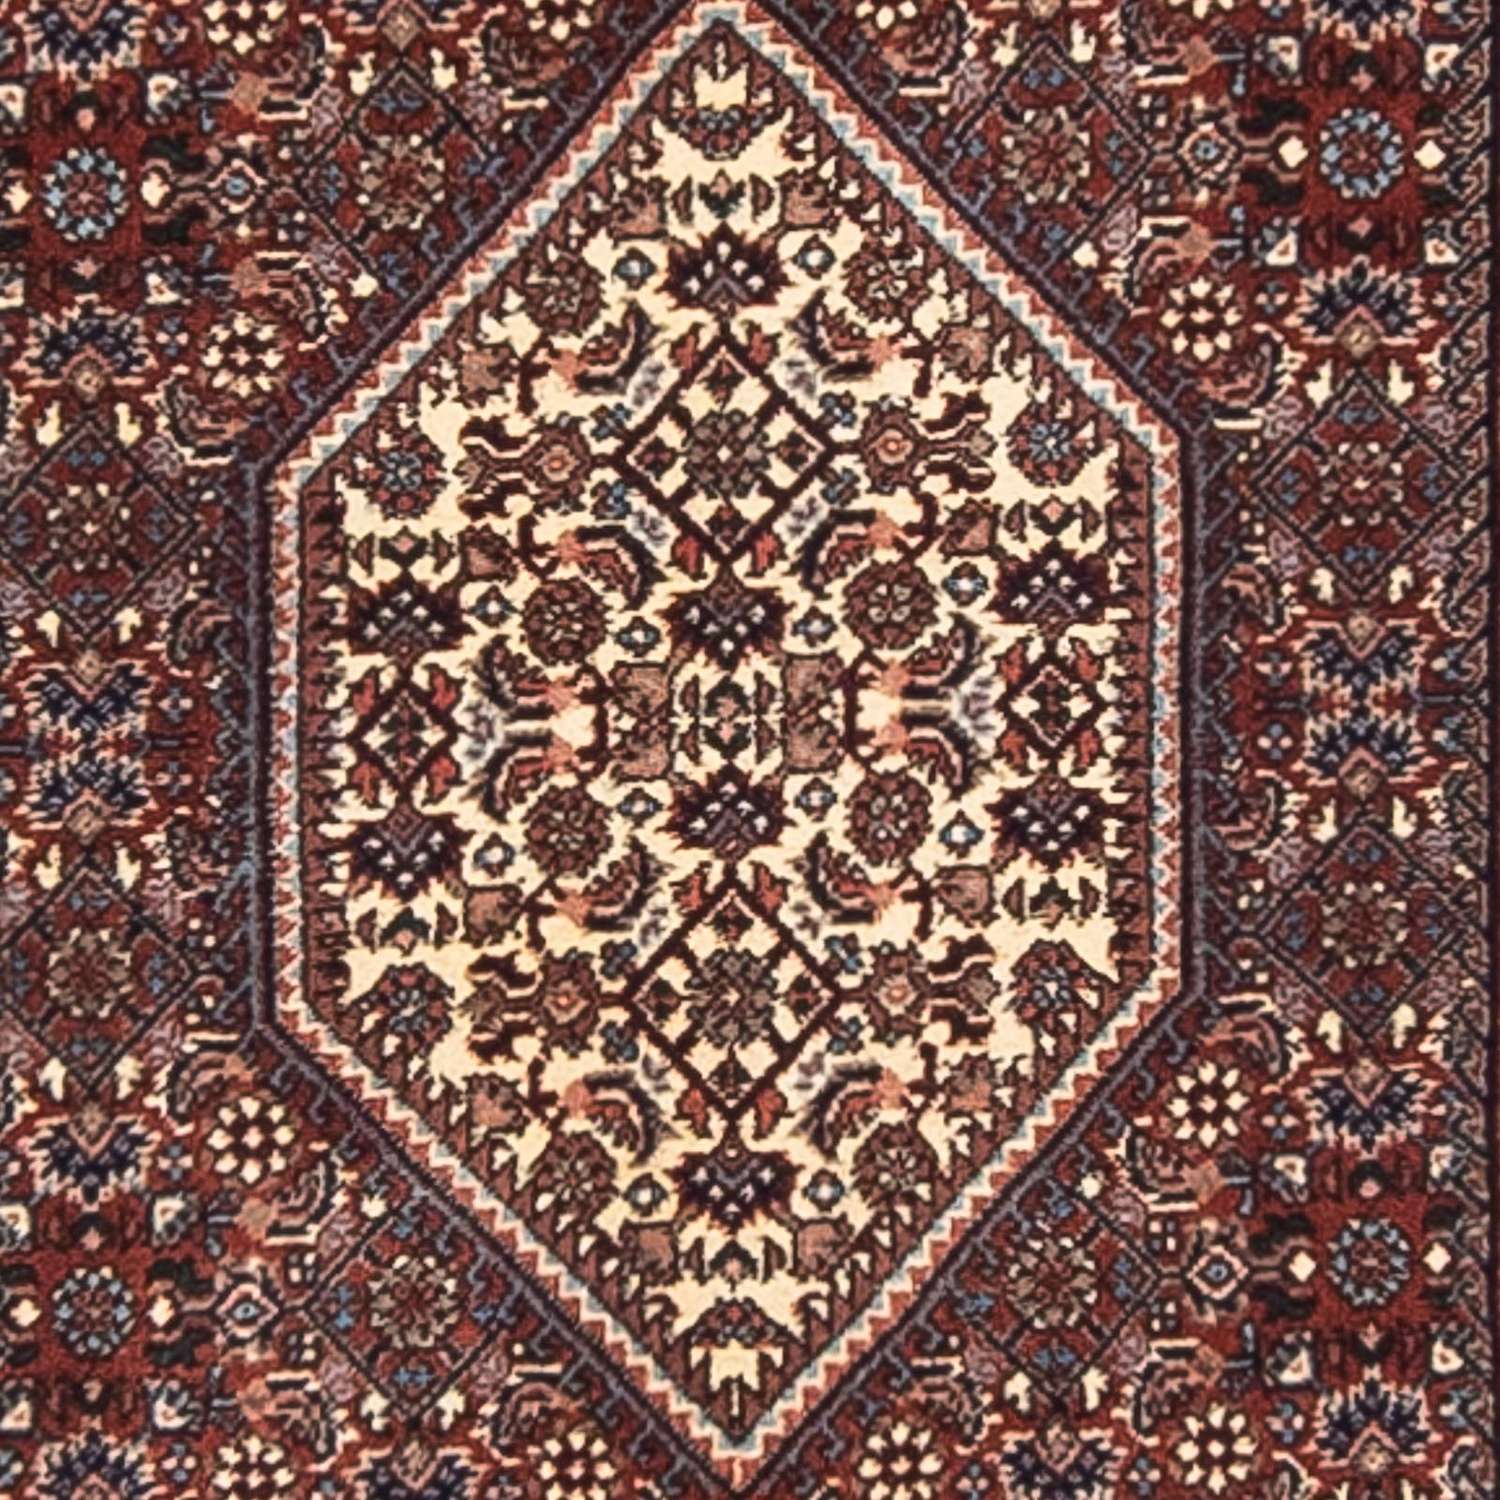 Loper Perzisch tapijt - Bijar - 364 x 78 cm - veelkleurig